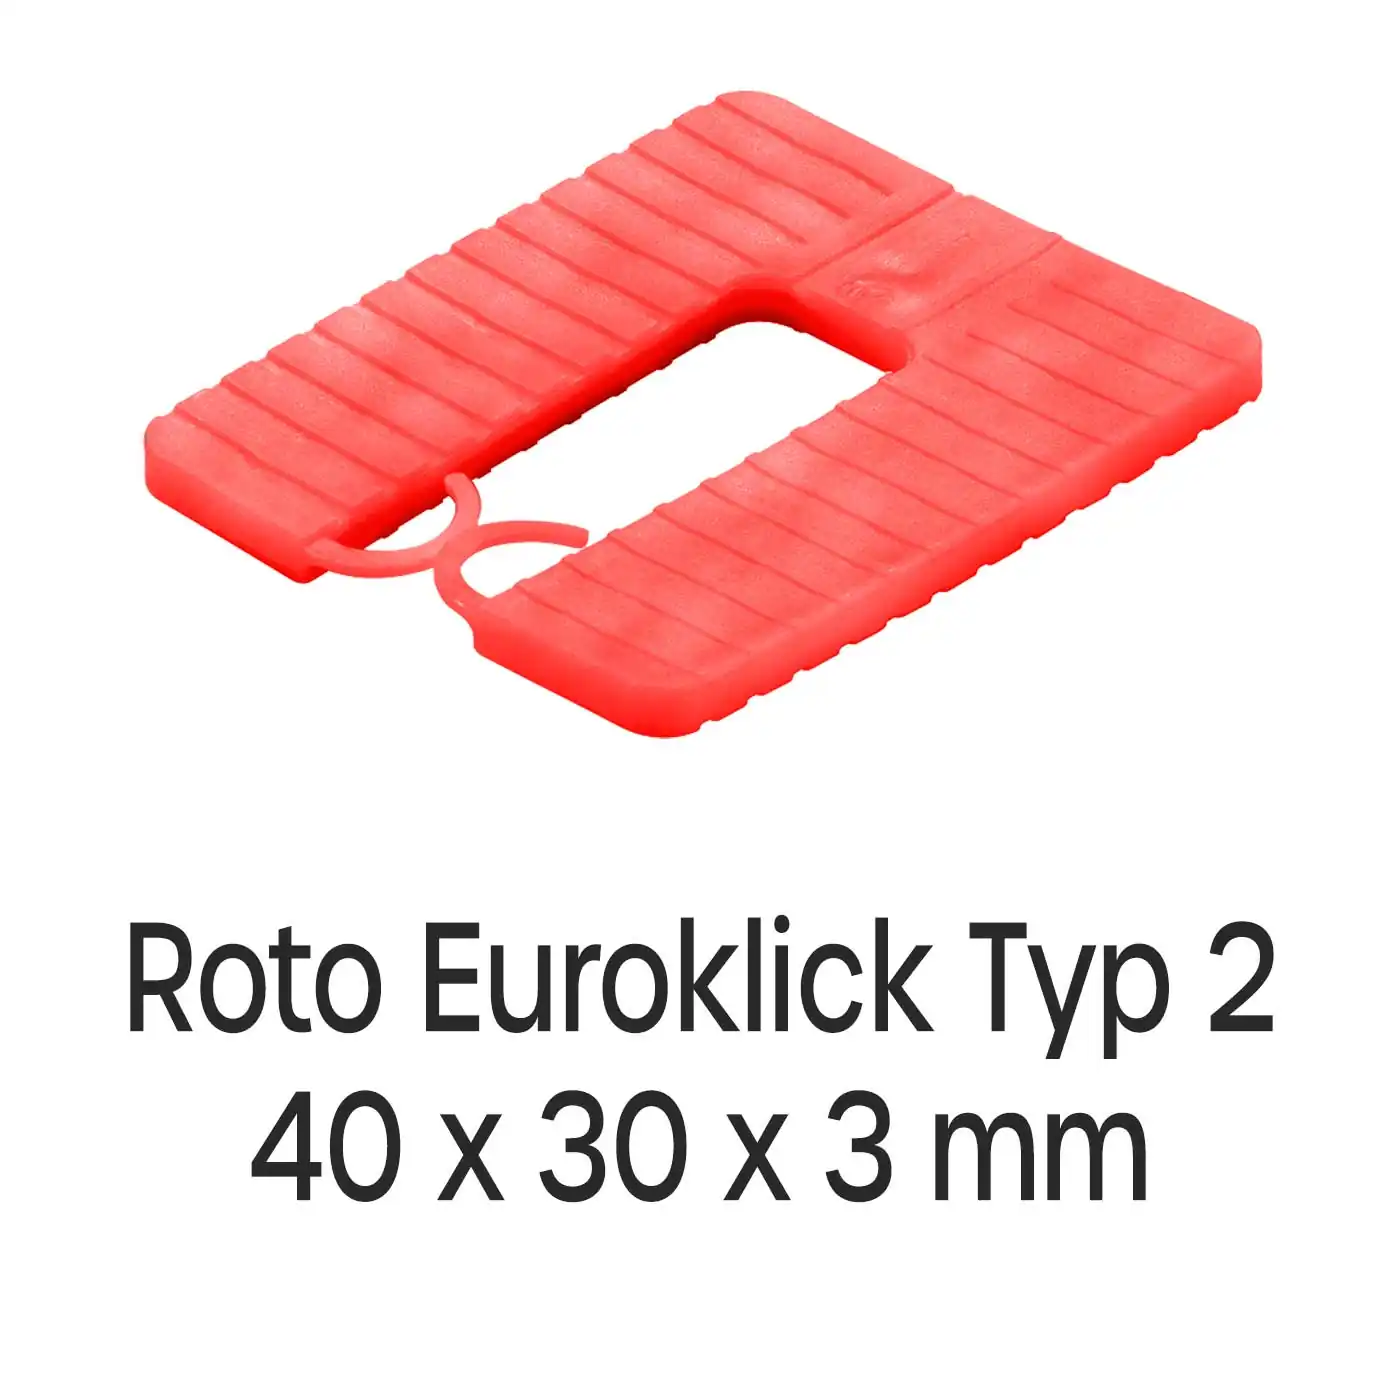 Distanzplatten Roto Euroklick Typ 2 40 x 30 x 3 mm 1000 Stück